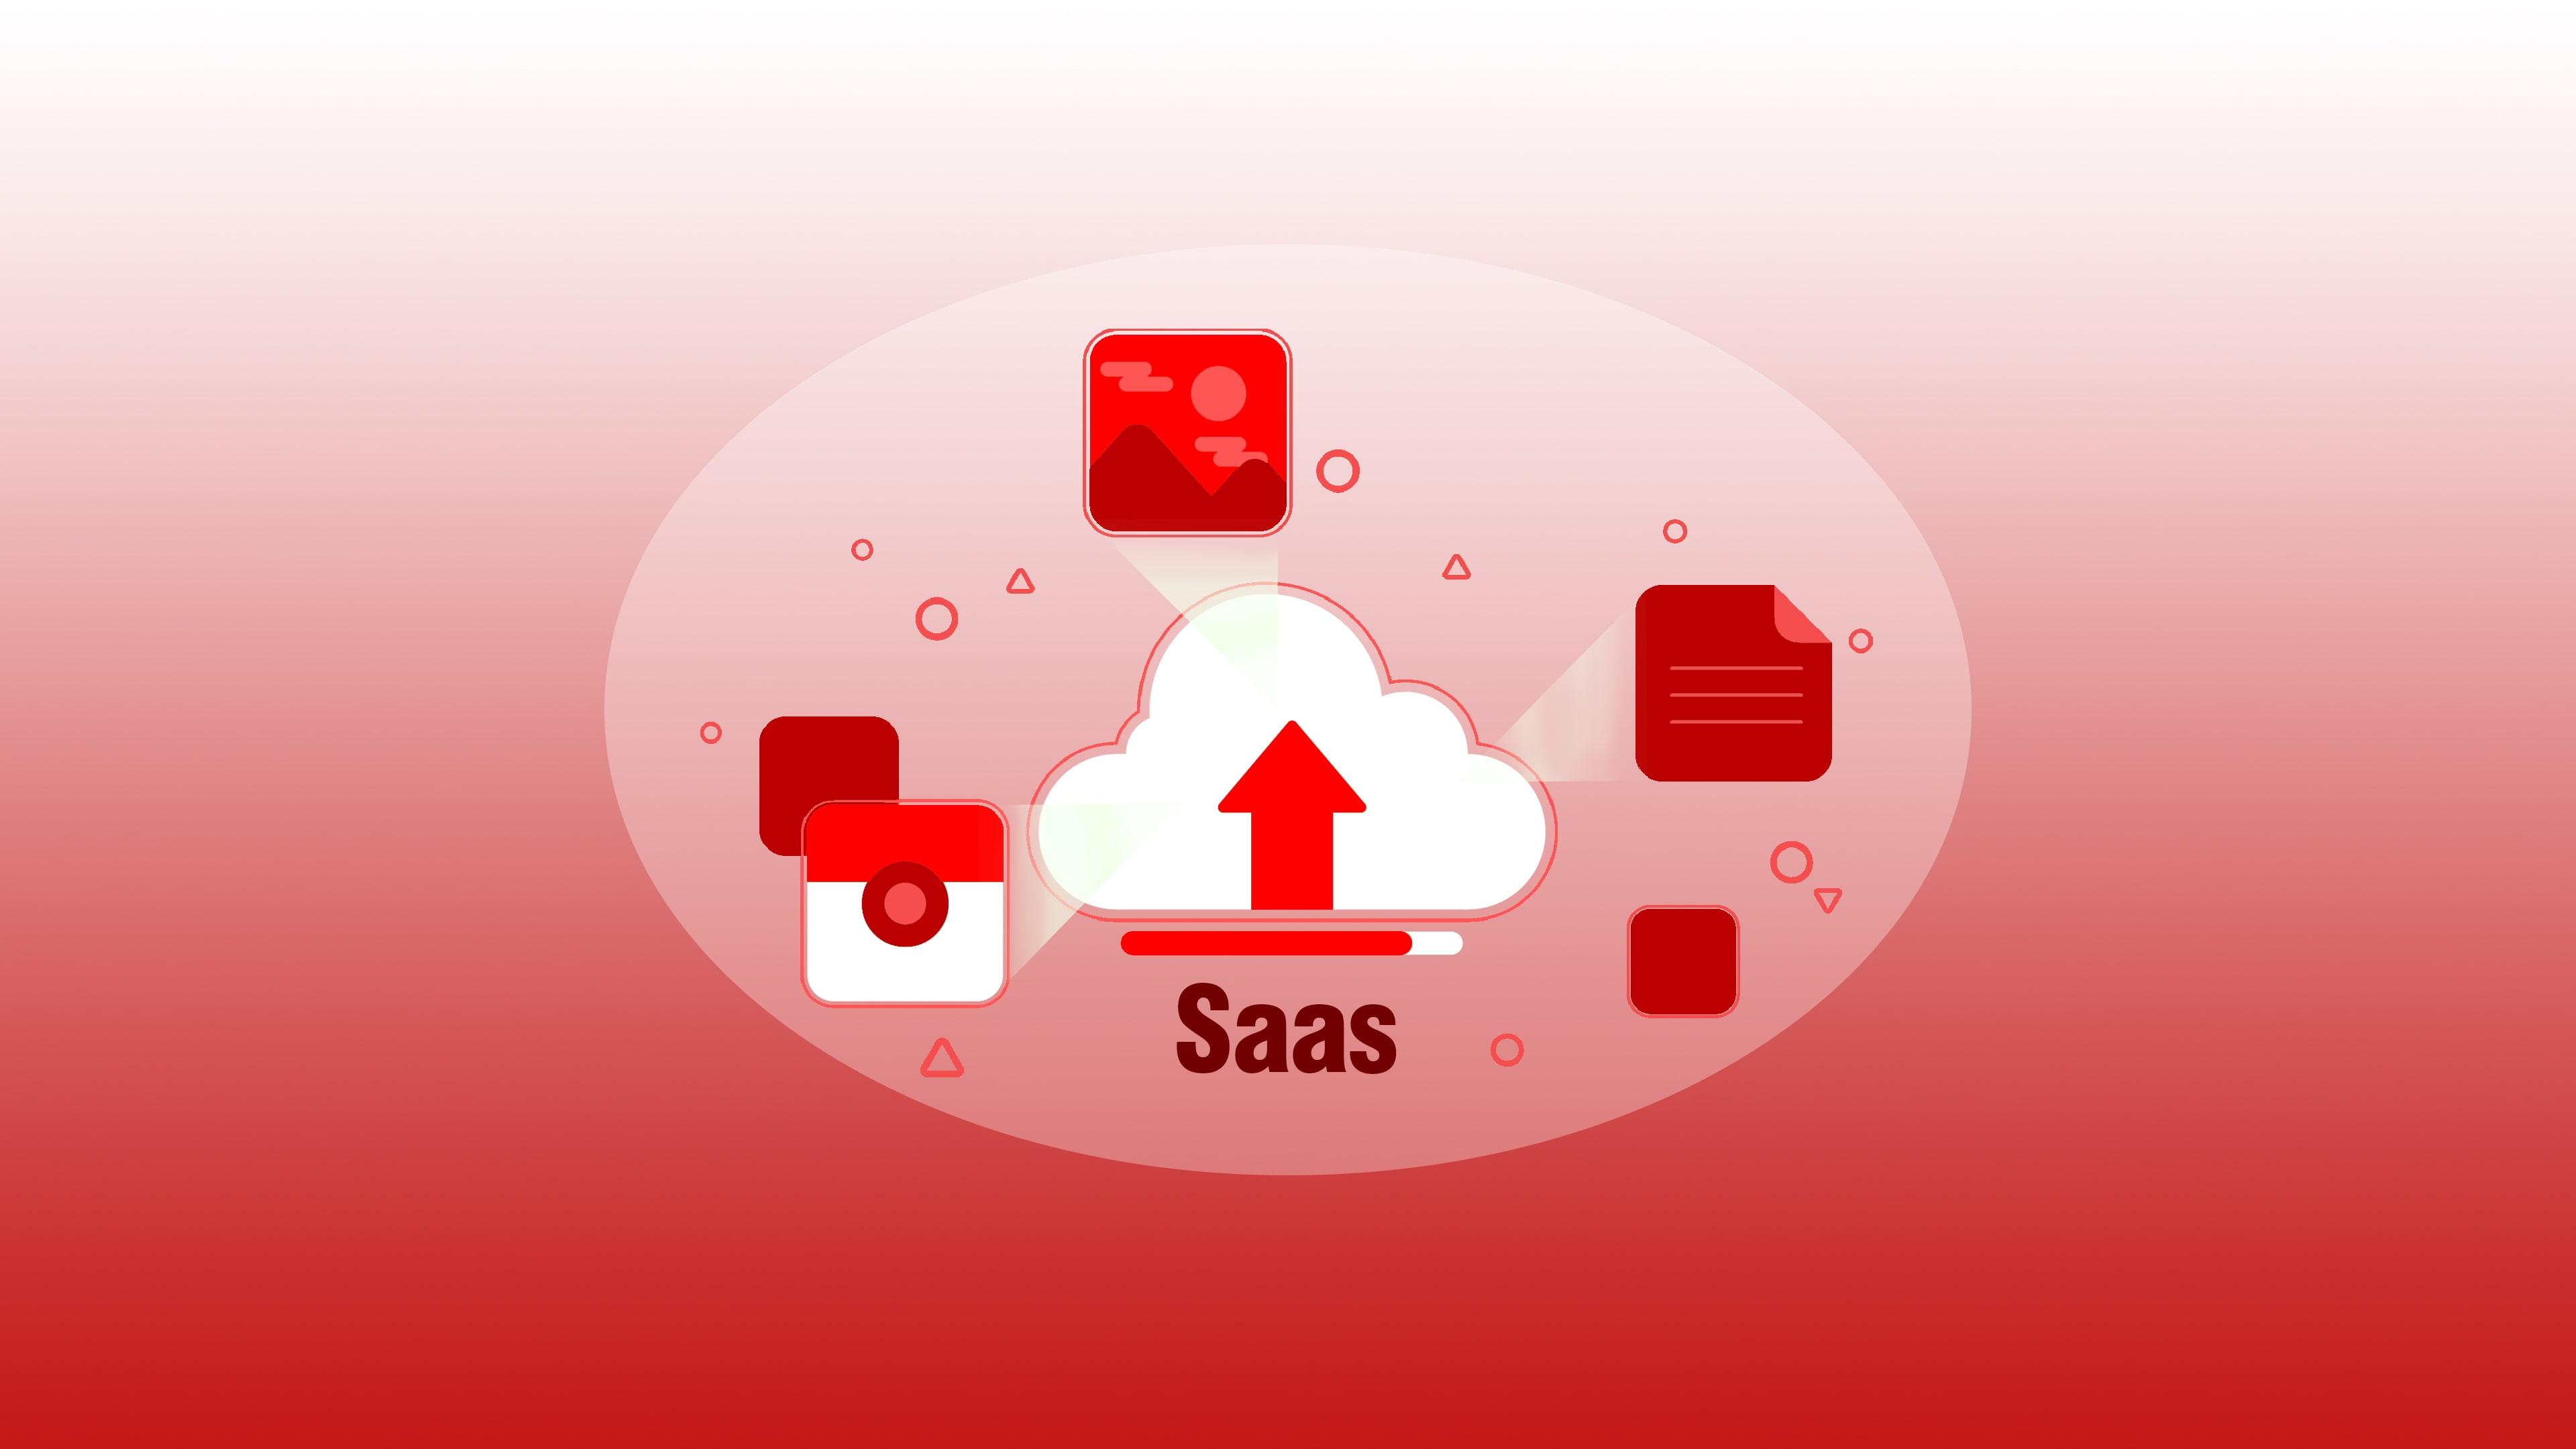 ‏SaaS چیست؟ نرم افزار به عنوان سرویس